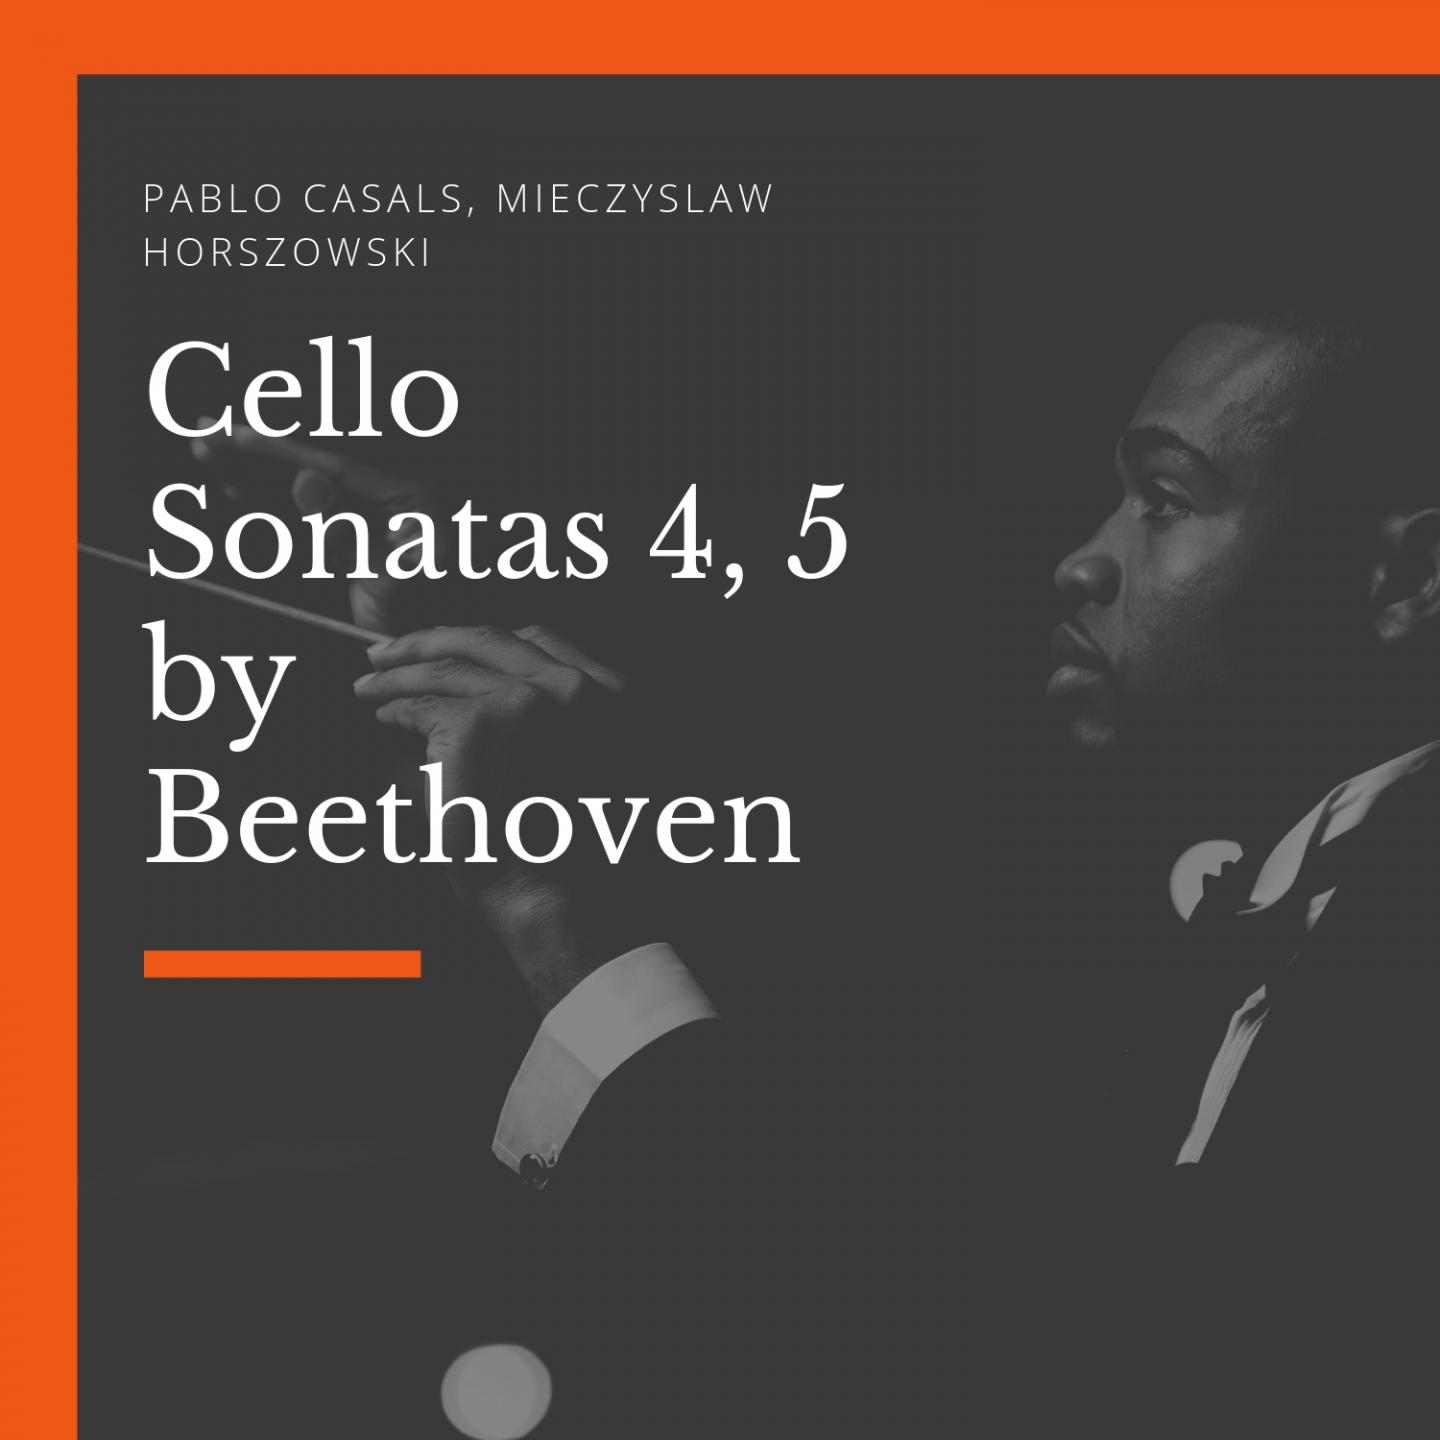 Cello Sonata, No. 4, in C Major, Op. 102 : No. 1: I. Andante - Allegro Vivace